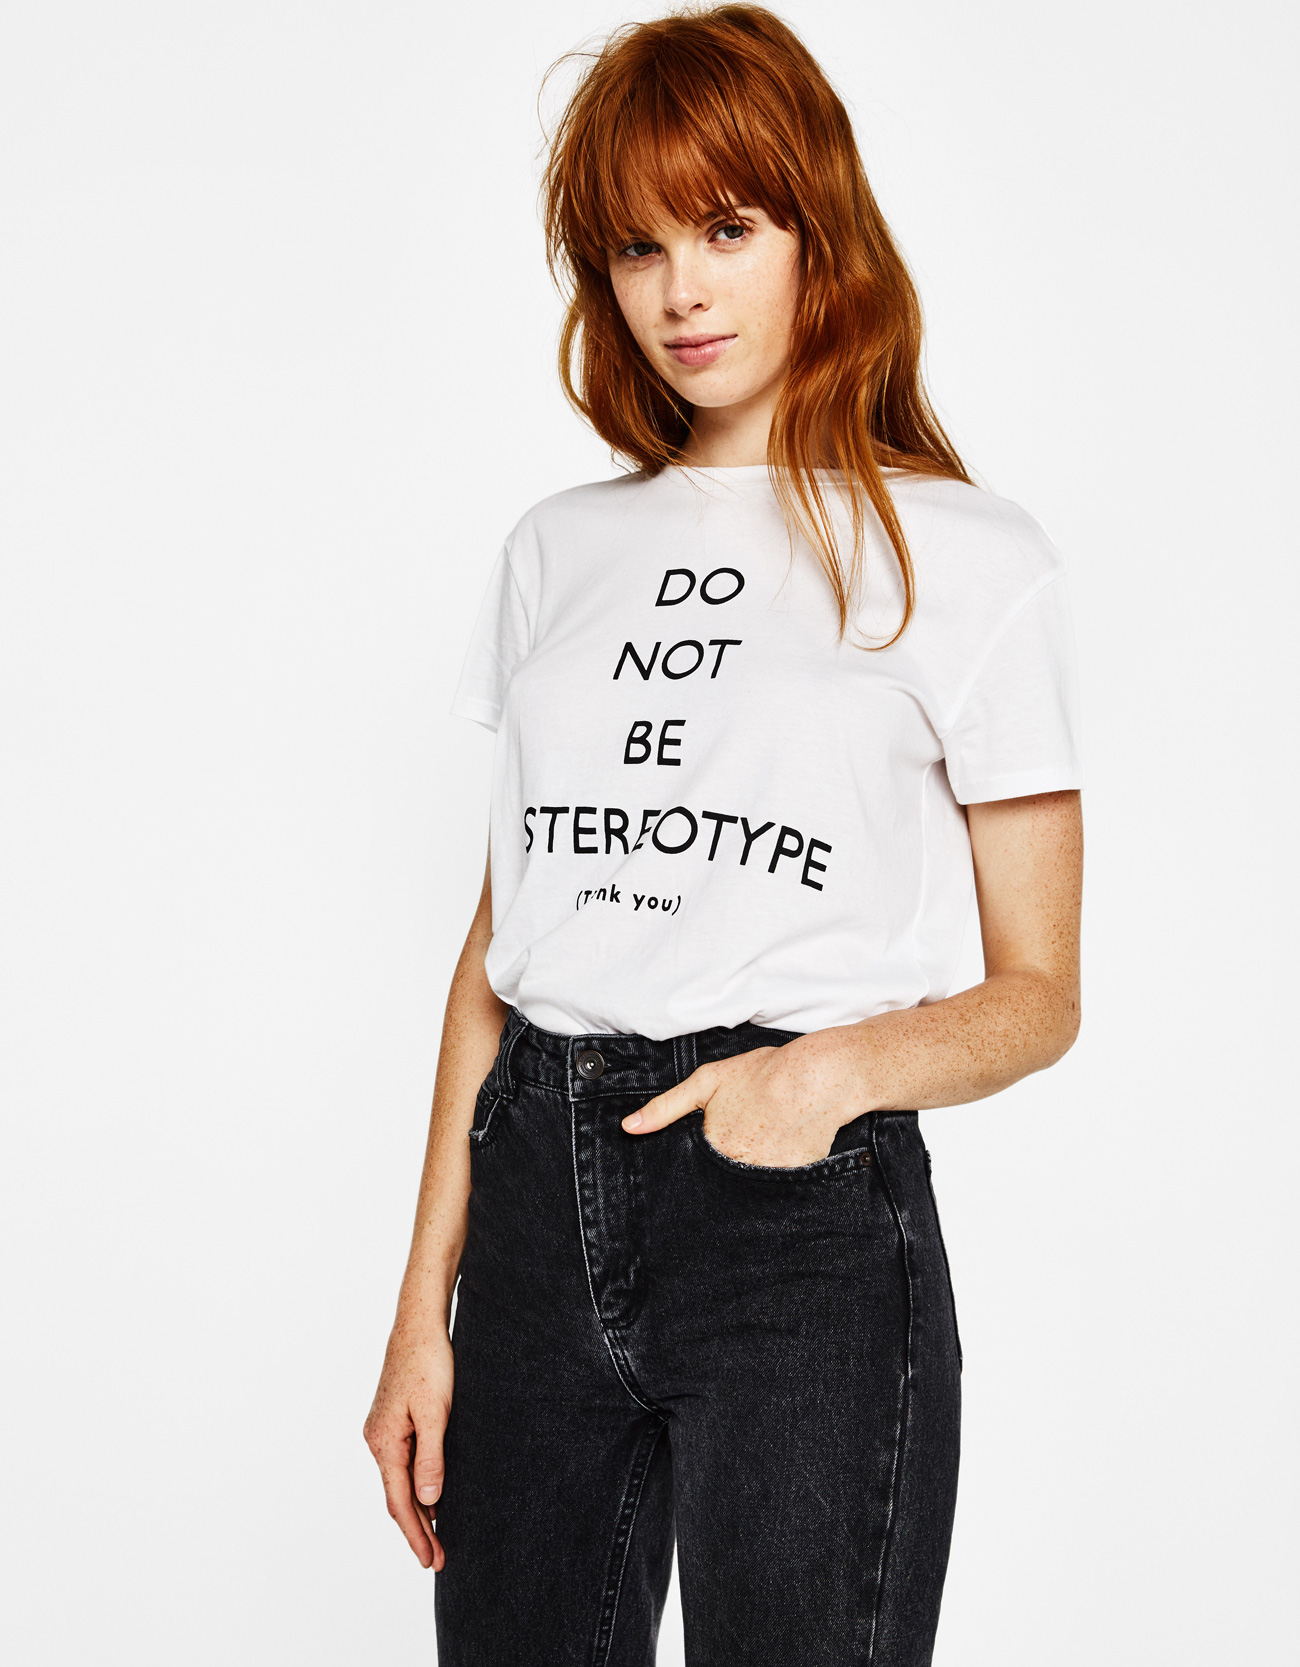 07-t-shirt-feministe-folkr-do-not-be-a-stereotype-bershka